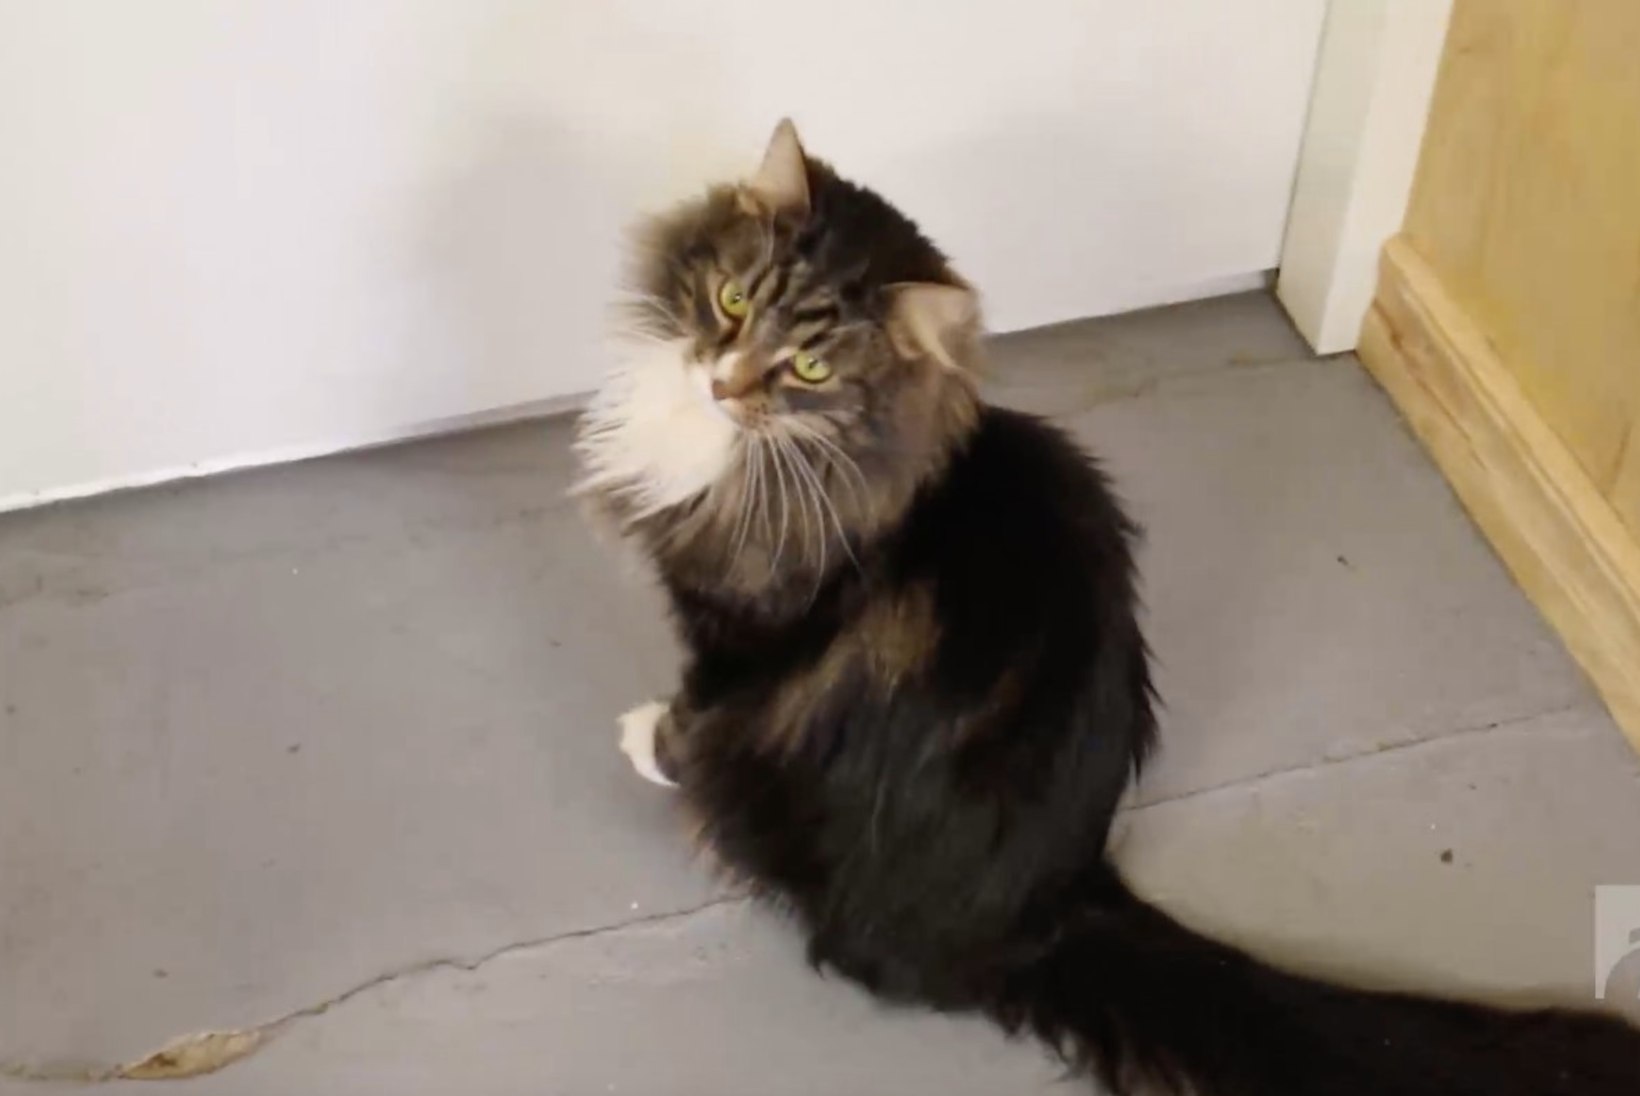 ÕHTULEHE VIDEO | KODUOTSIJA: Kolmeaastane kassipoiss Gustav soovib head kodu, toredat inimest ja palju süüa!